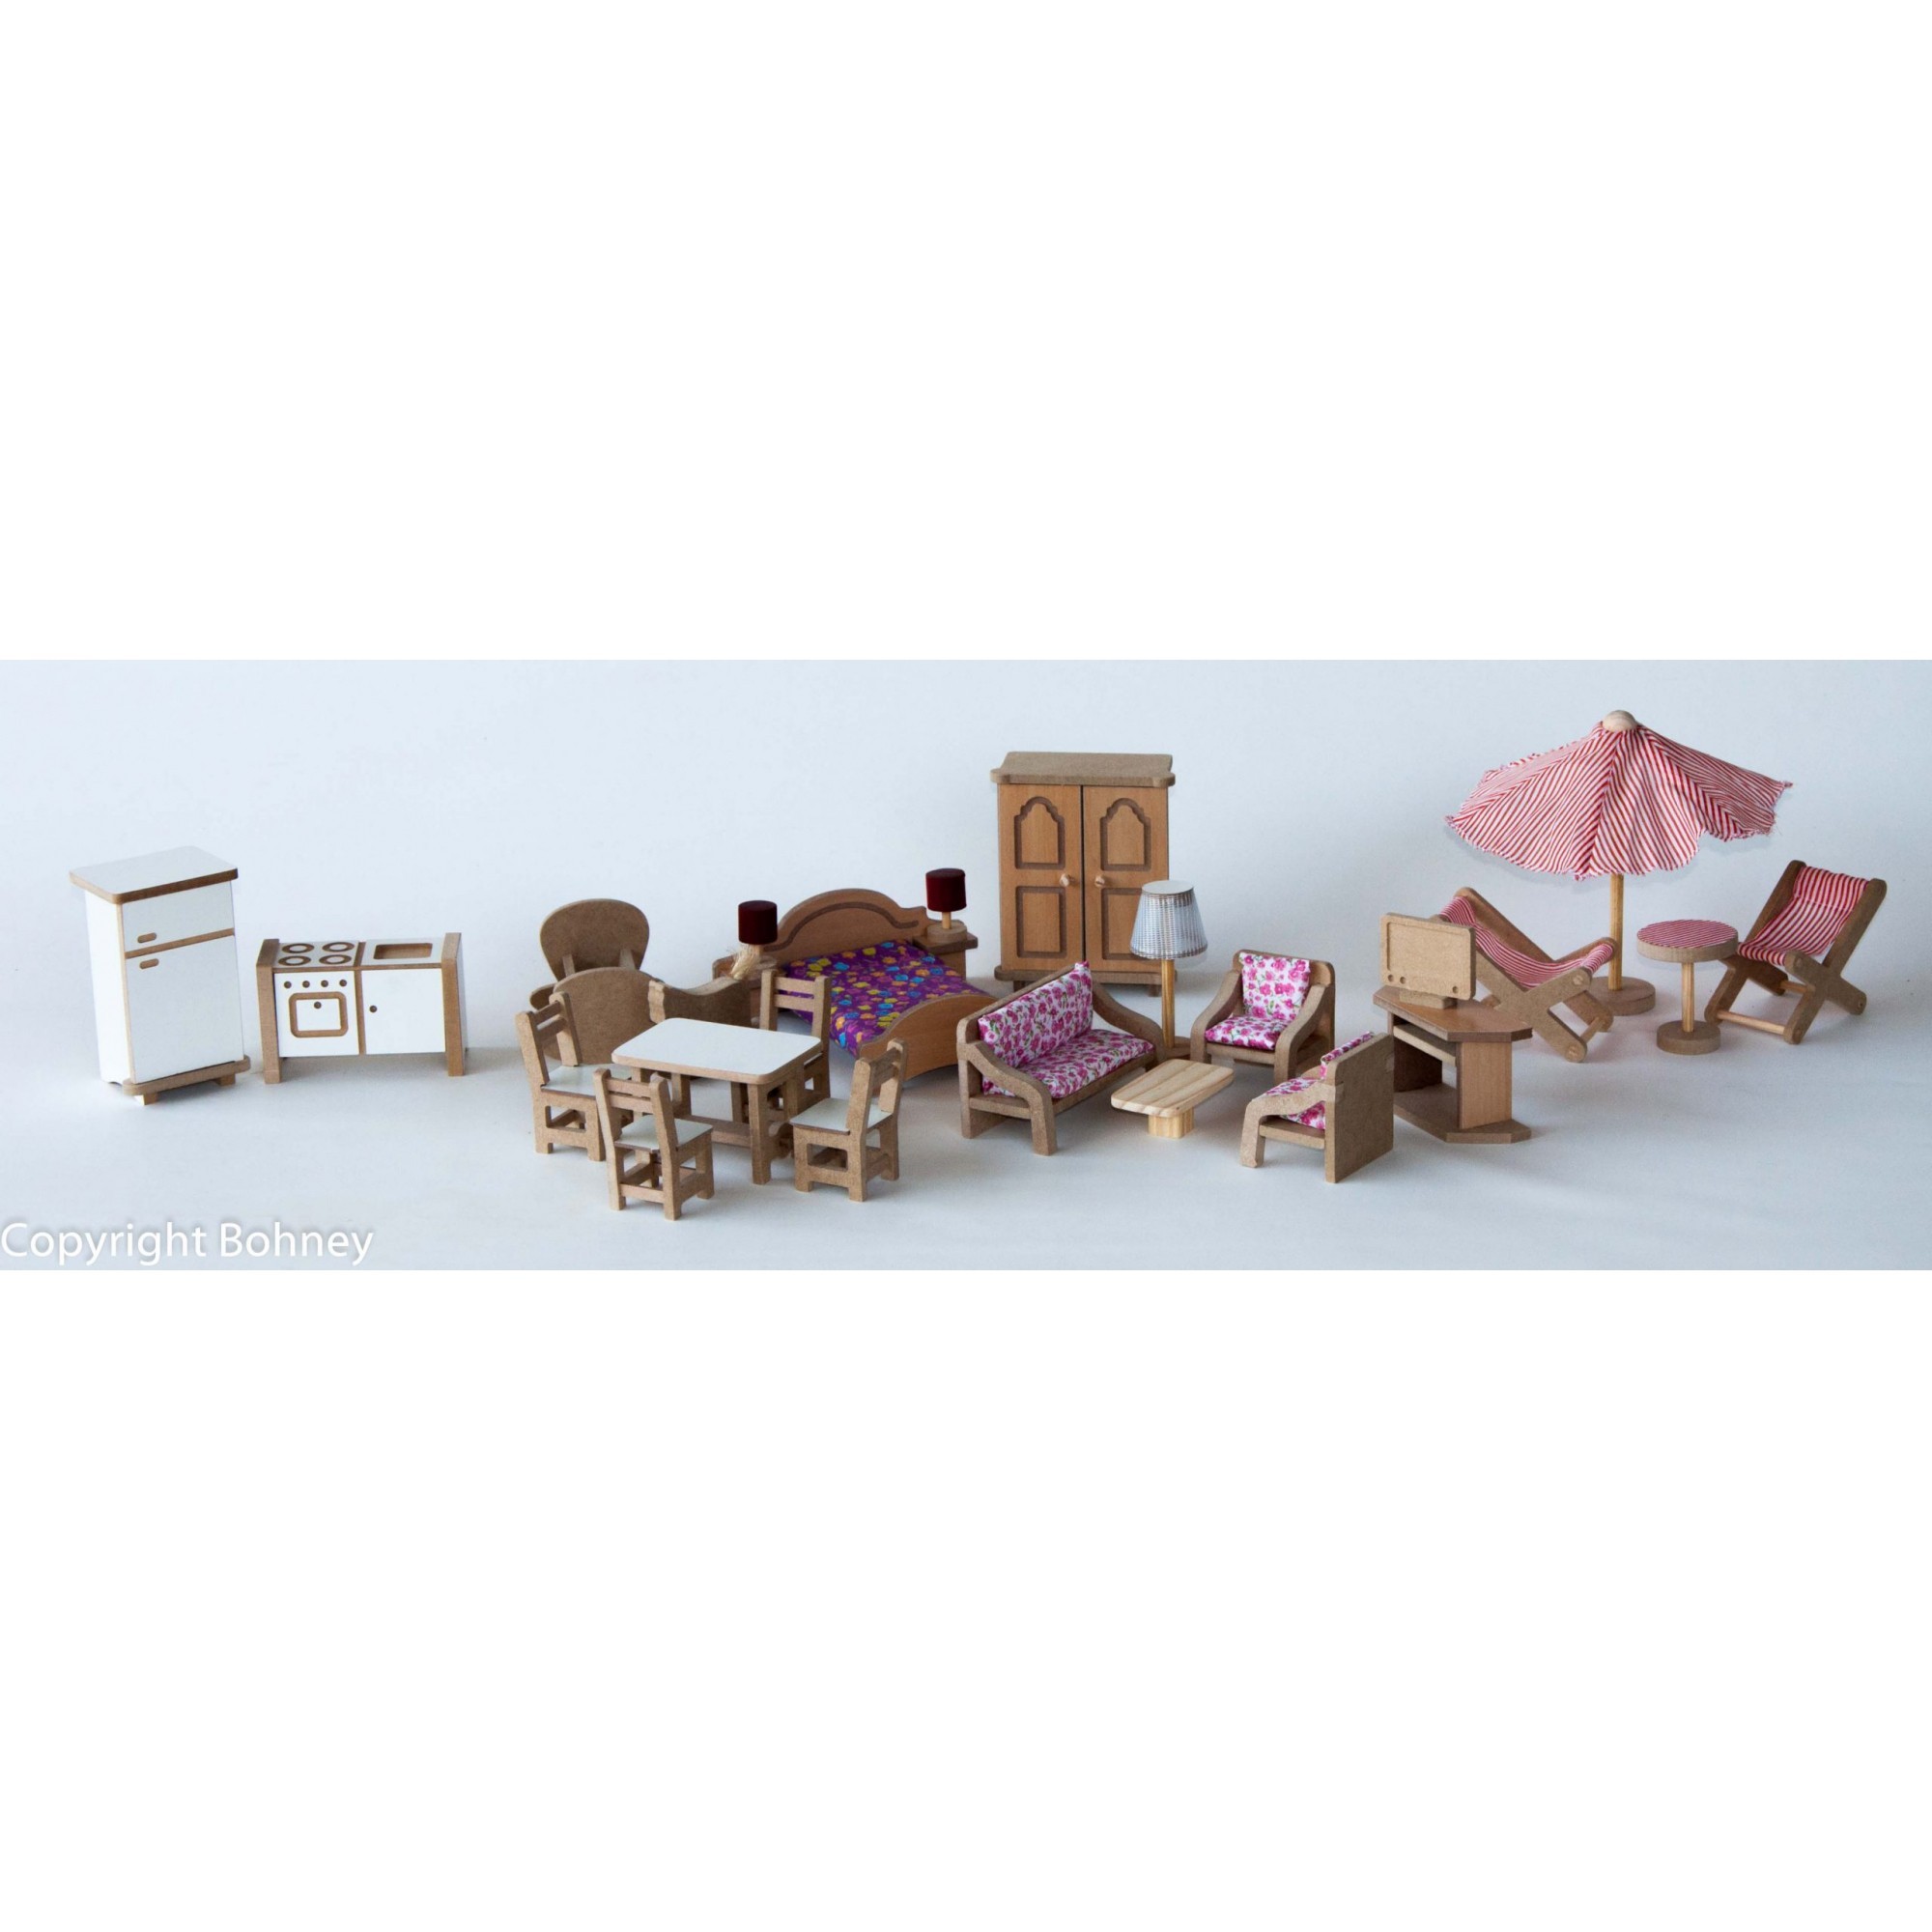 Kit Móveis para Casinha de Boneca Completo Brinquedo de Madeira